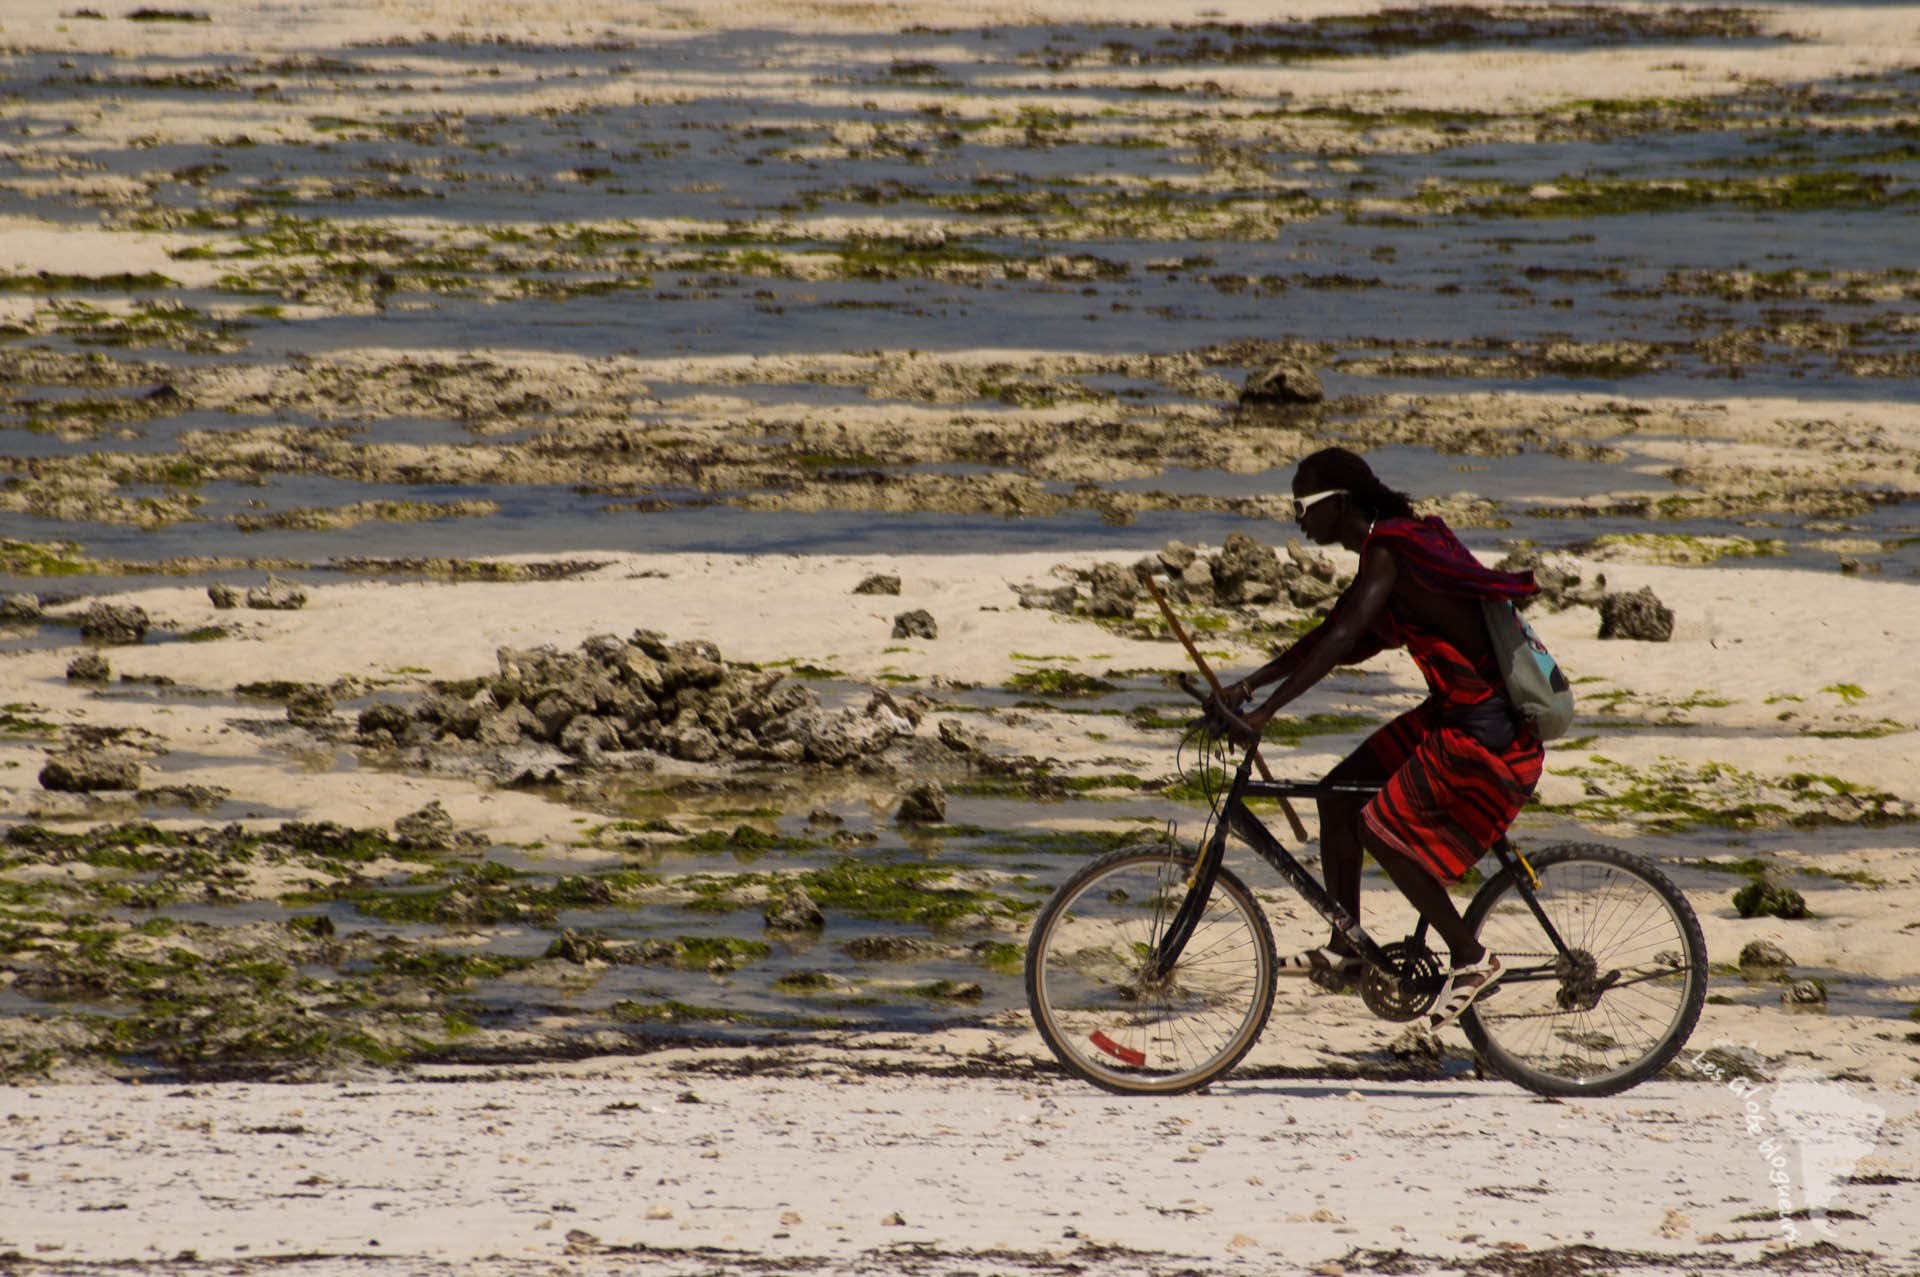 Un masai sur la plage à Zanzibar... Plutôt incongru !